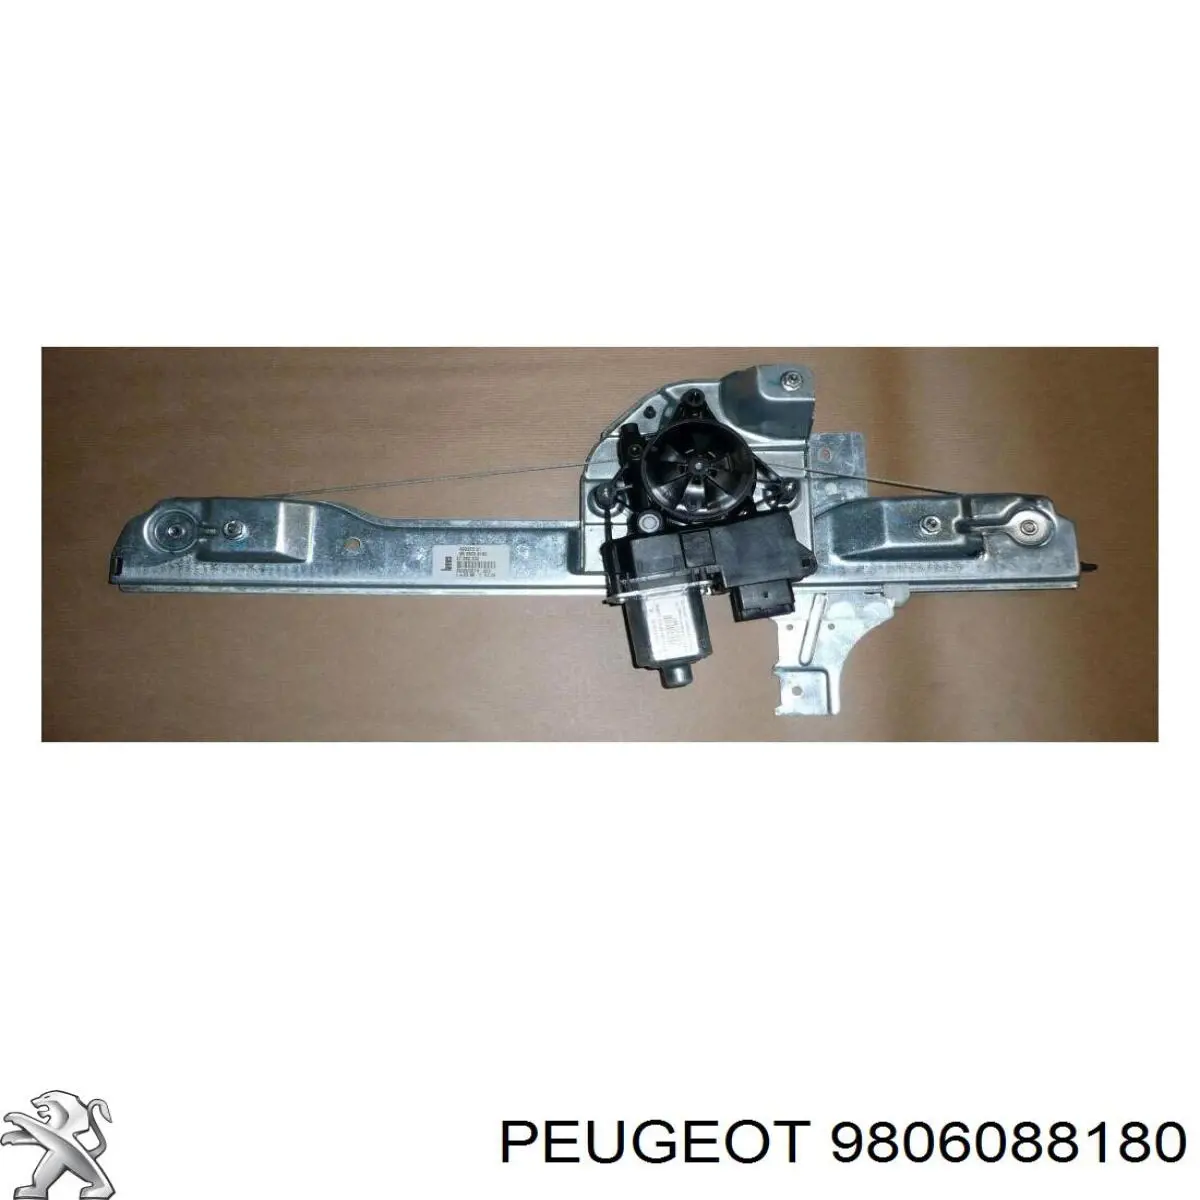 9806088180 Peugeot/Citroen mecanismo de acionamento de vidro da porta dianteira esquerda